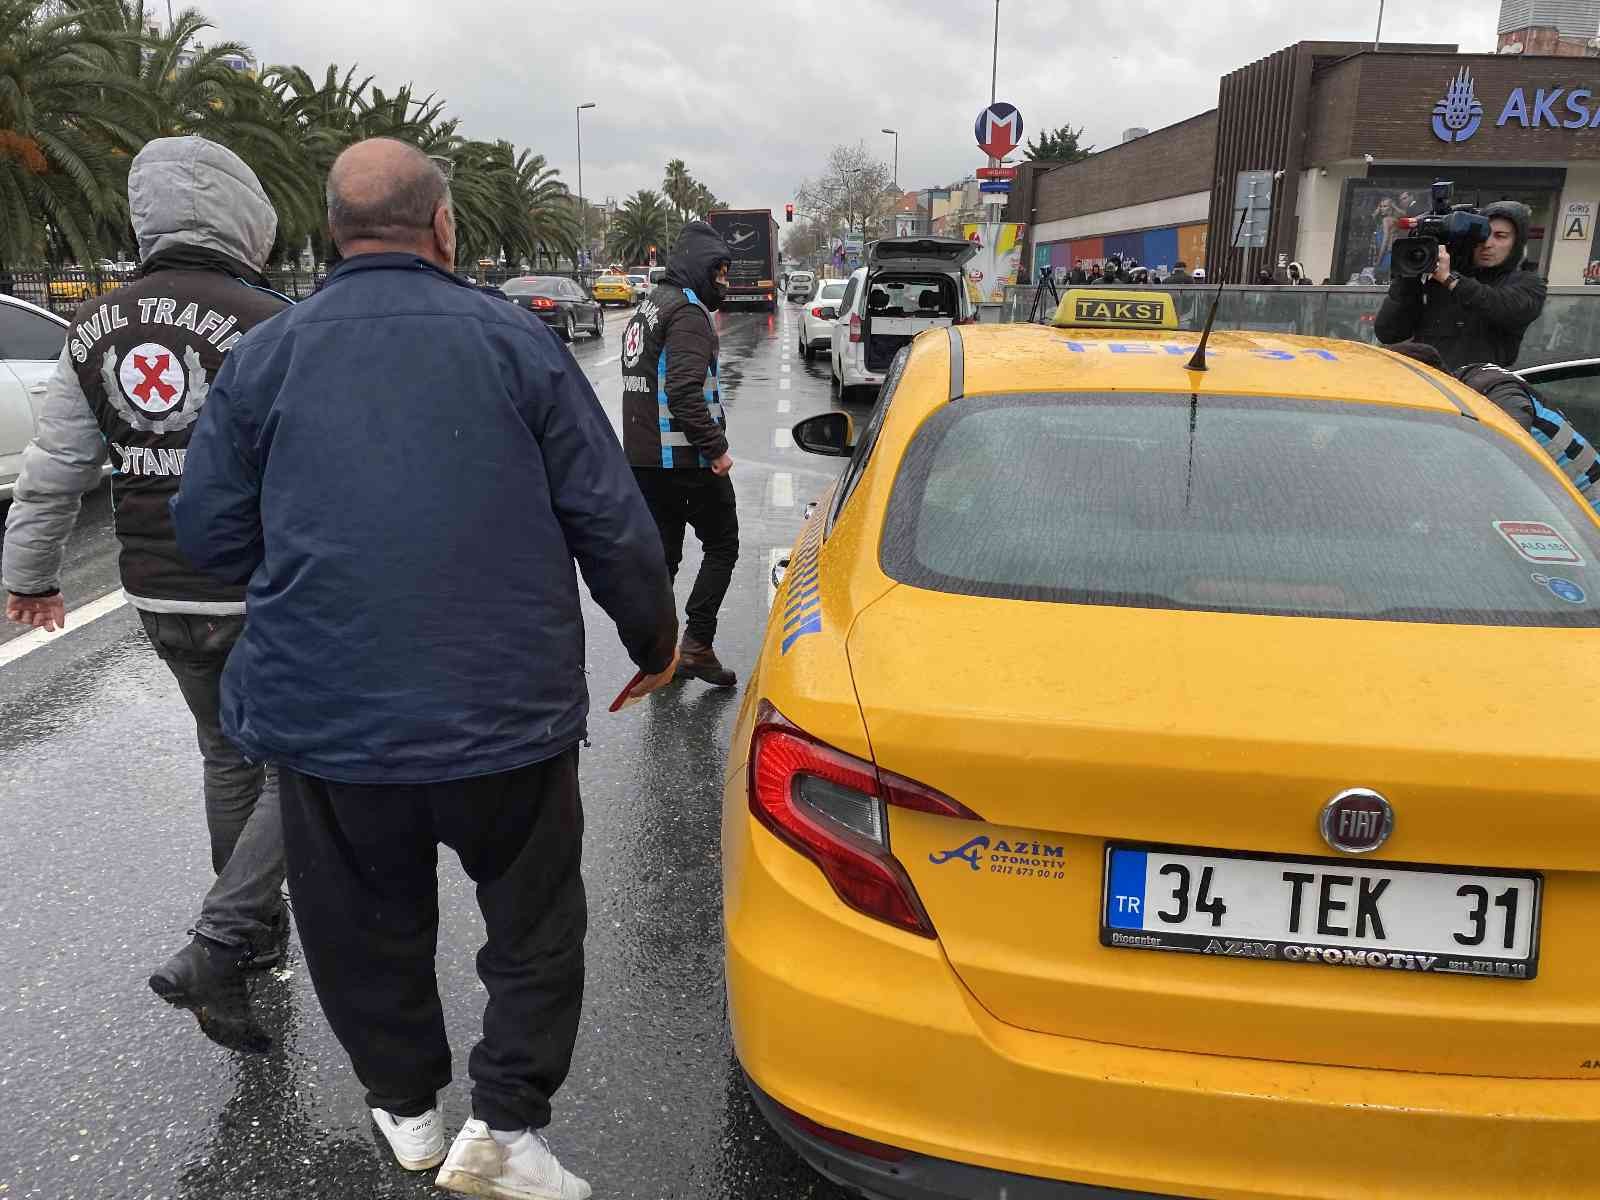 Ceza yiyen taksiciden polise ve gazetecilere tepki: “Sanki mafya yakaladınız” #istanbul